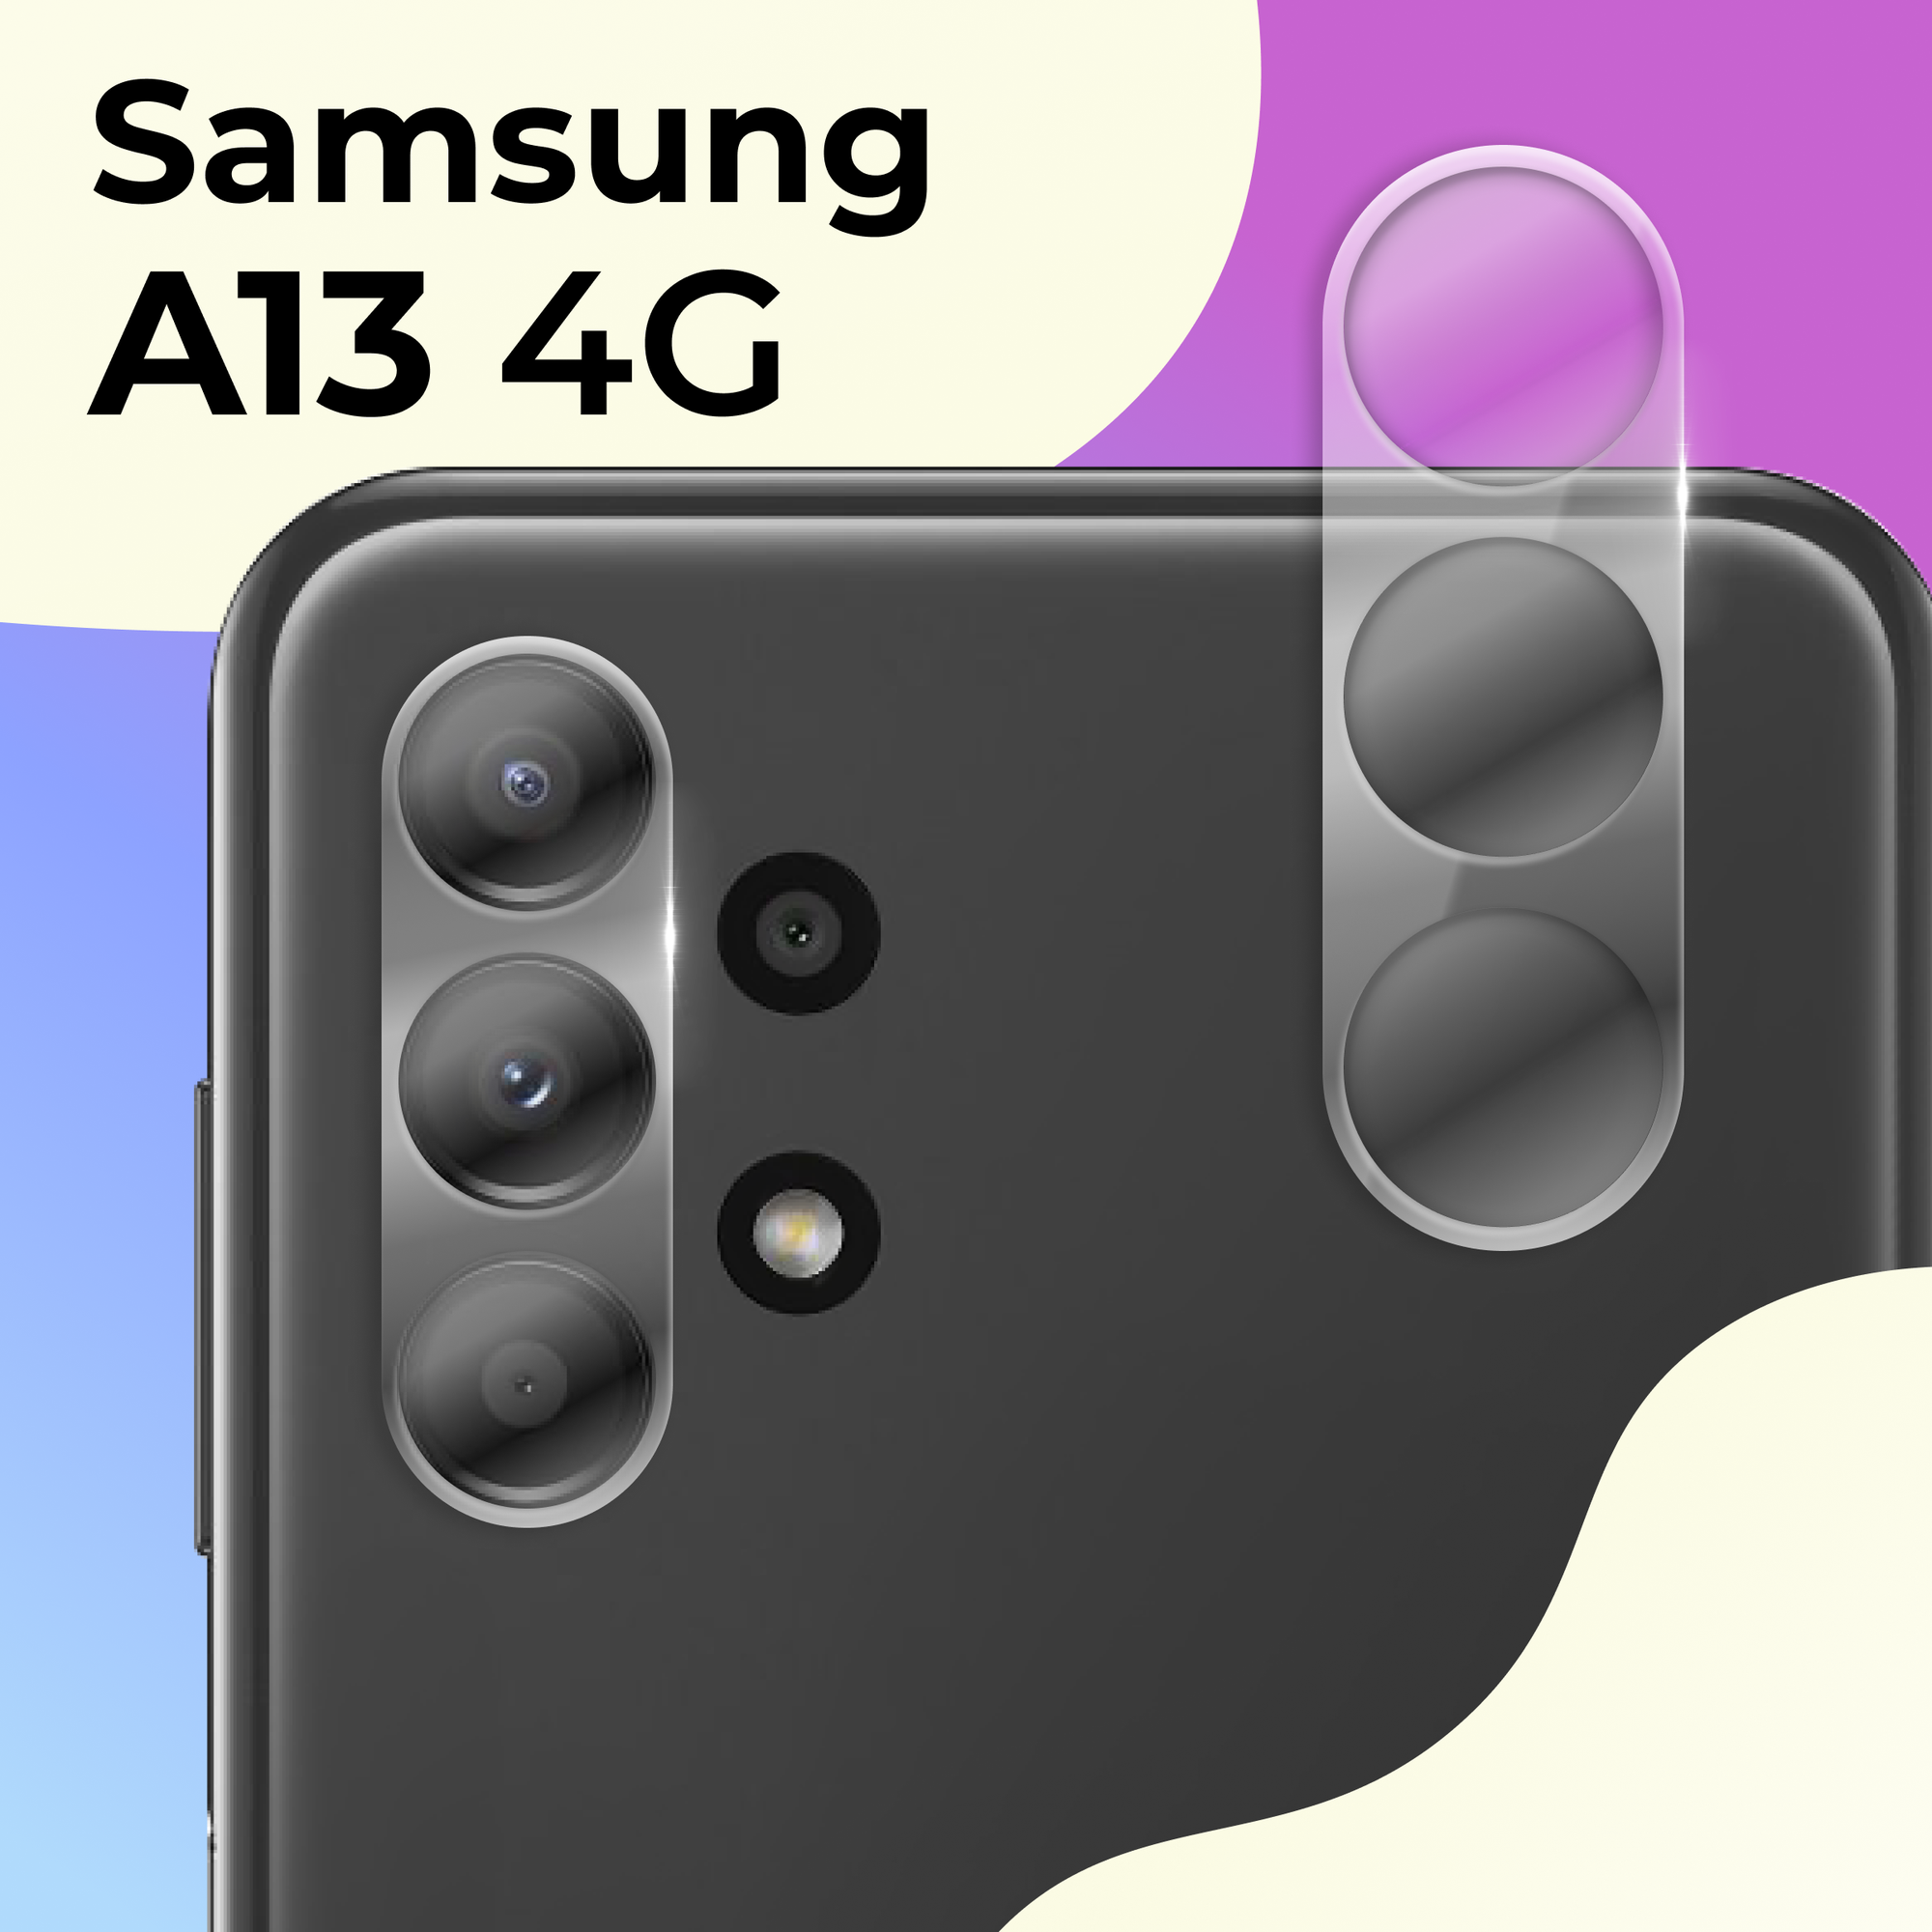 Защитное стекло на камеру телефона Samsung Galaxy A13 4G / Противоударное стекло для задней камеры смартфона Самсунг Галакси А13 4Г Прозрачное